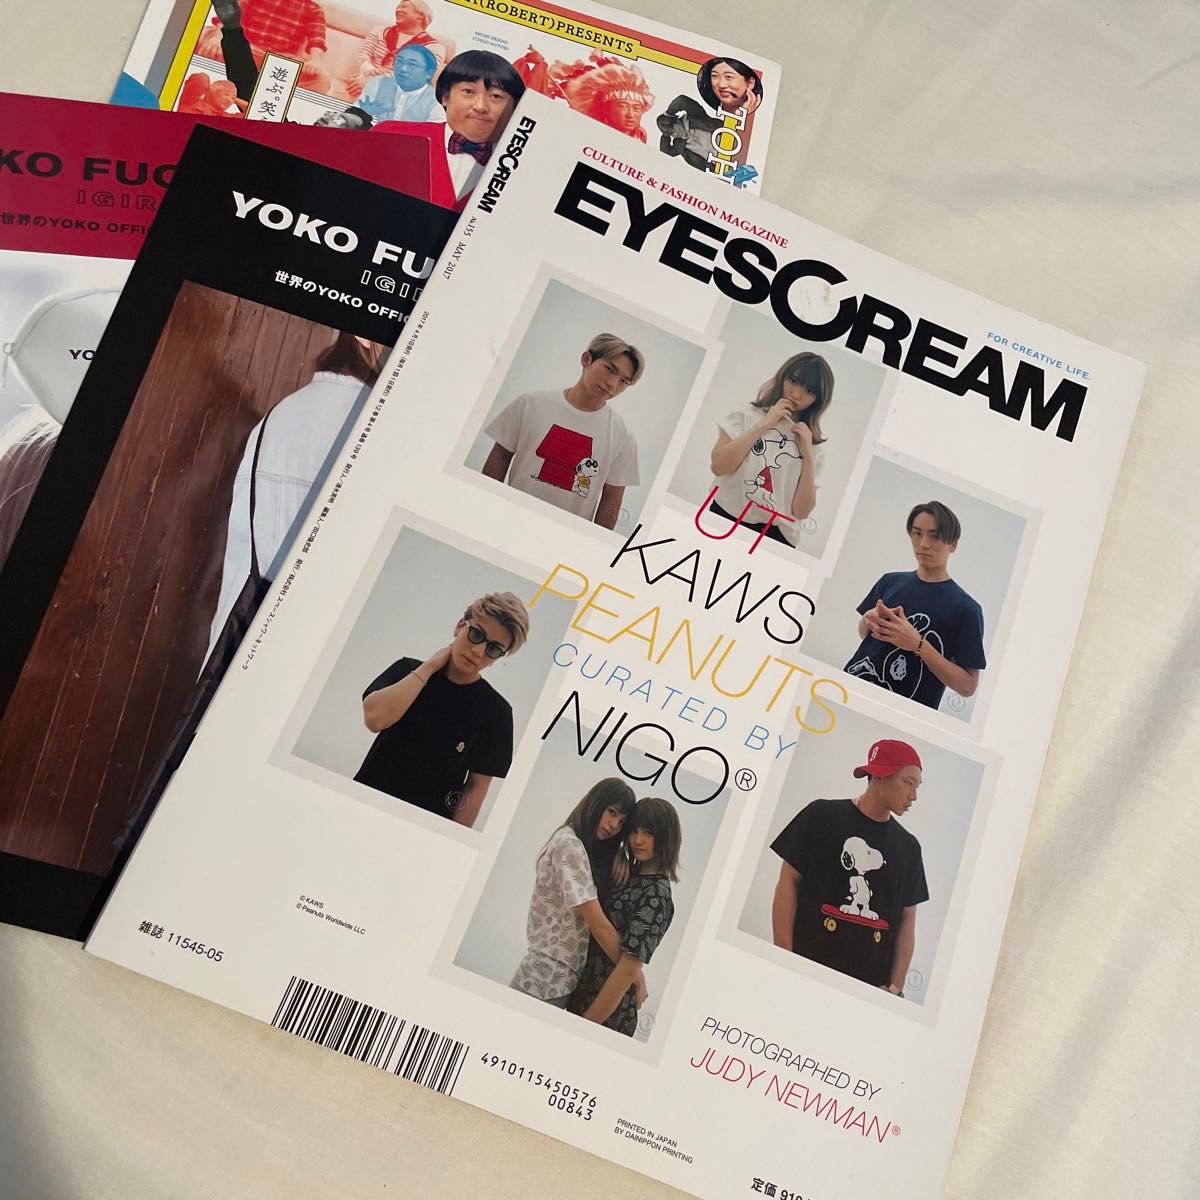 アイスクリーム EYESCREAM 雑誌 ロバート秋山 Tシャツ特集 2017 カルチャー誌 ファッション誌